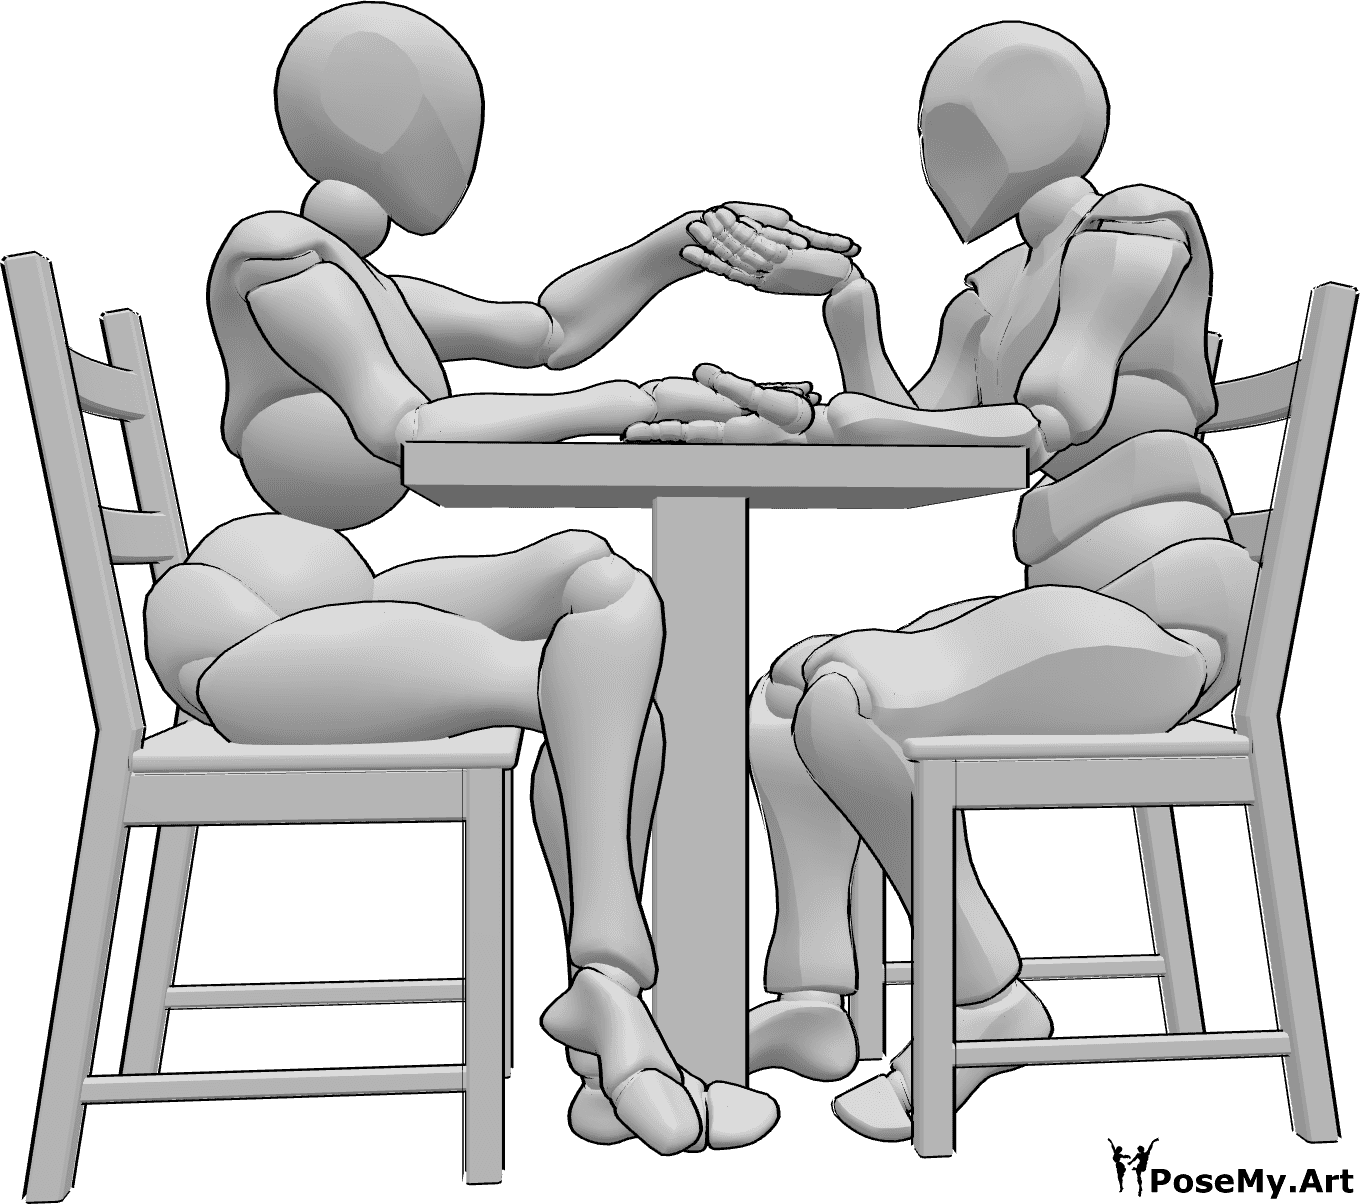 Referencia de poses- Postura sentada cogida de la mano - Mujer y hombre están sentados en una mesa y cogidos de la mano, el hombre está a punto de besar la mano izquierda de la mujer.